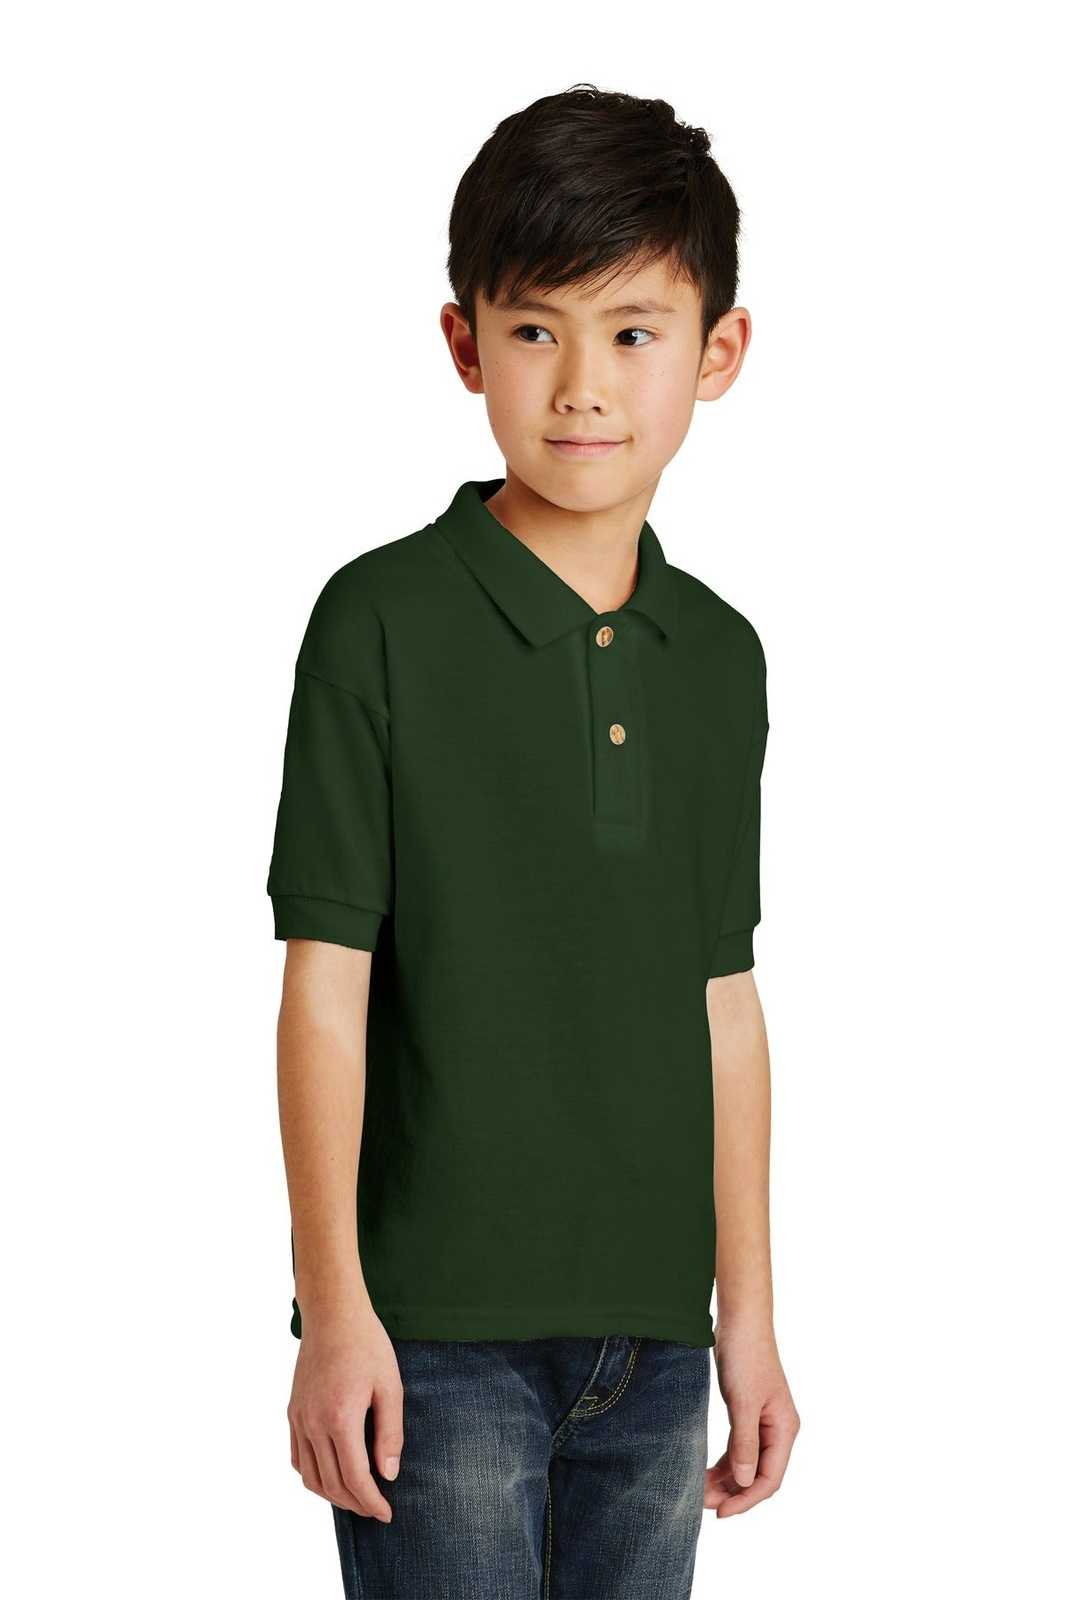 Gildan 8800B Youth Dryblend 6-Ounce Jersey Knit Sport Shirt - Forest Green - HIT a Double